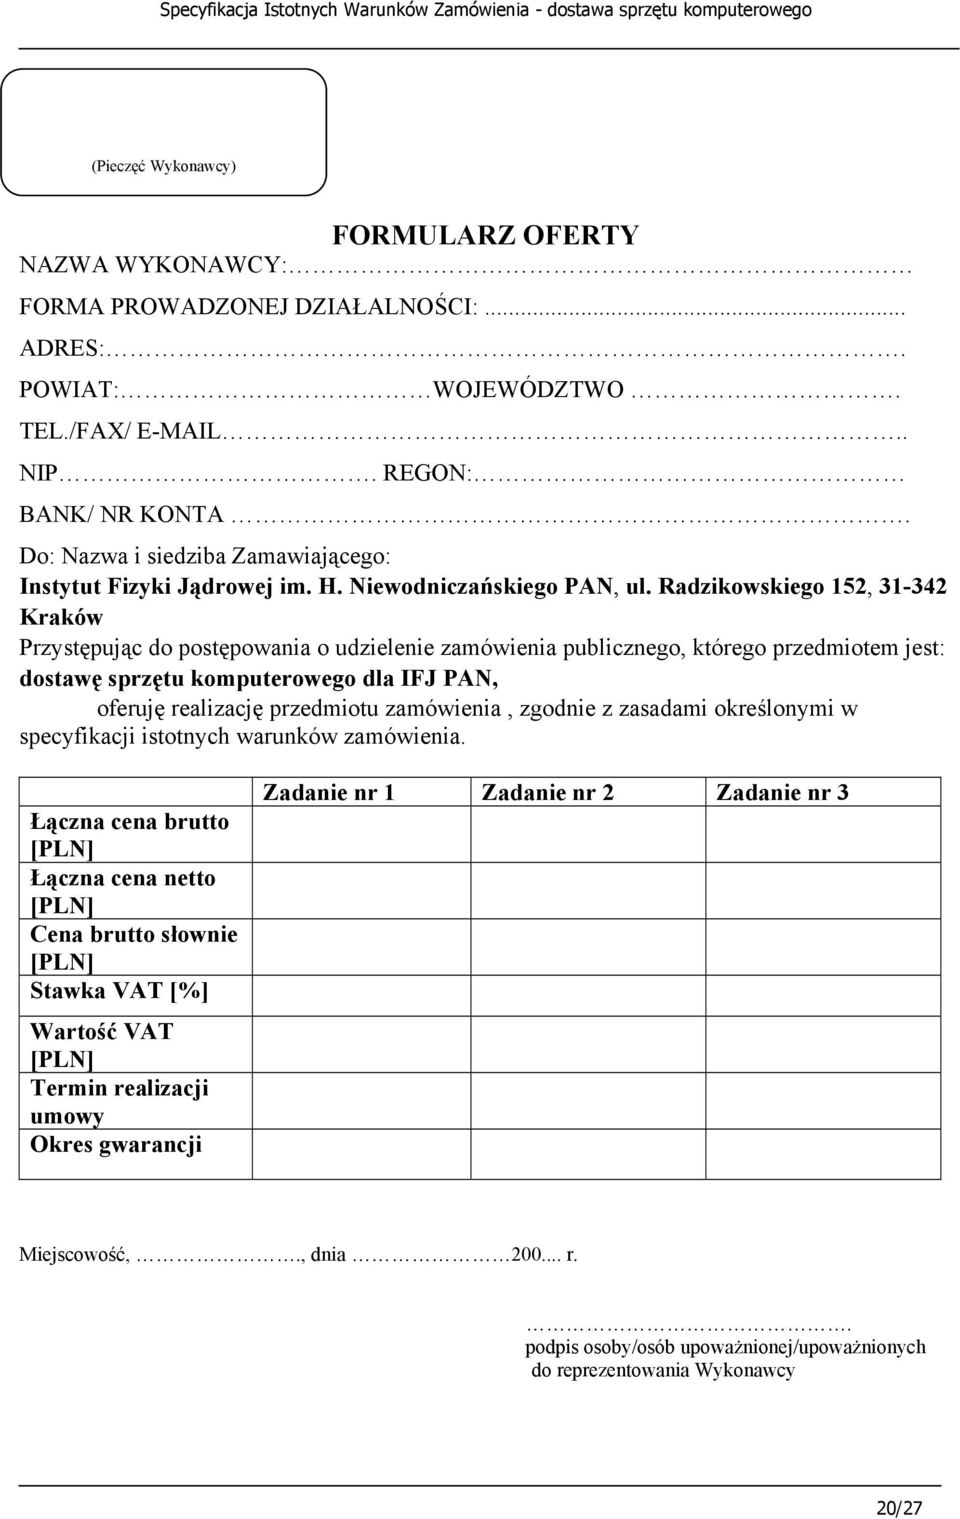 Radzikowskiego 152, 31-342 Kraków Przystępując do postępowania o udzielenie zamówienia publicznego, którego przedmiotem jest: dostawę sprzętu komputerowego dla IFJ PAN, oferuję realizację przedmiotu